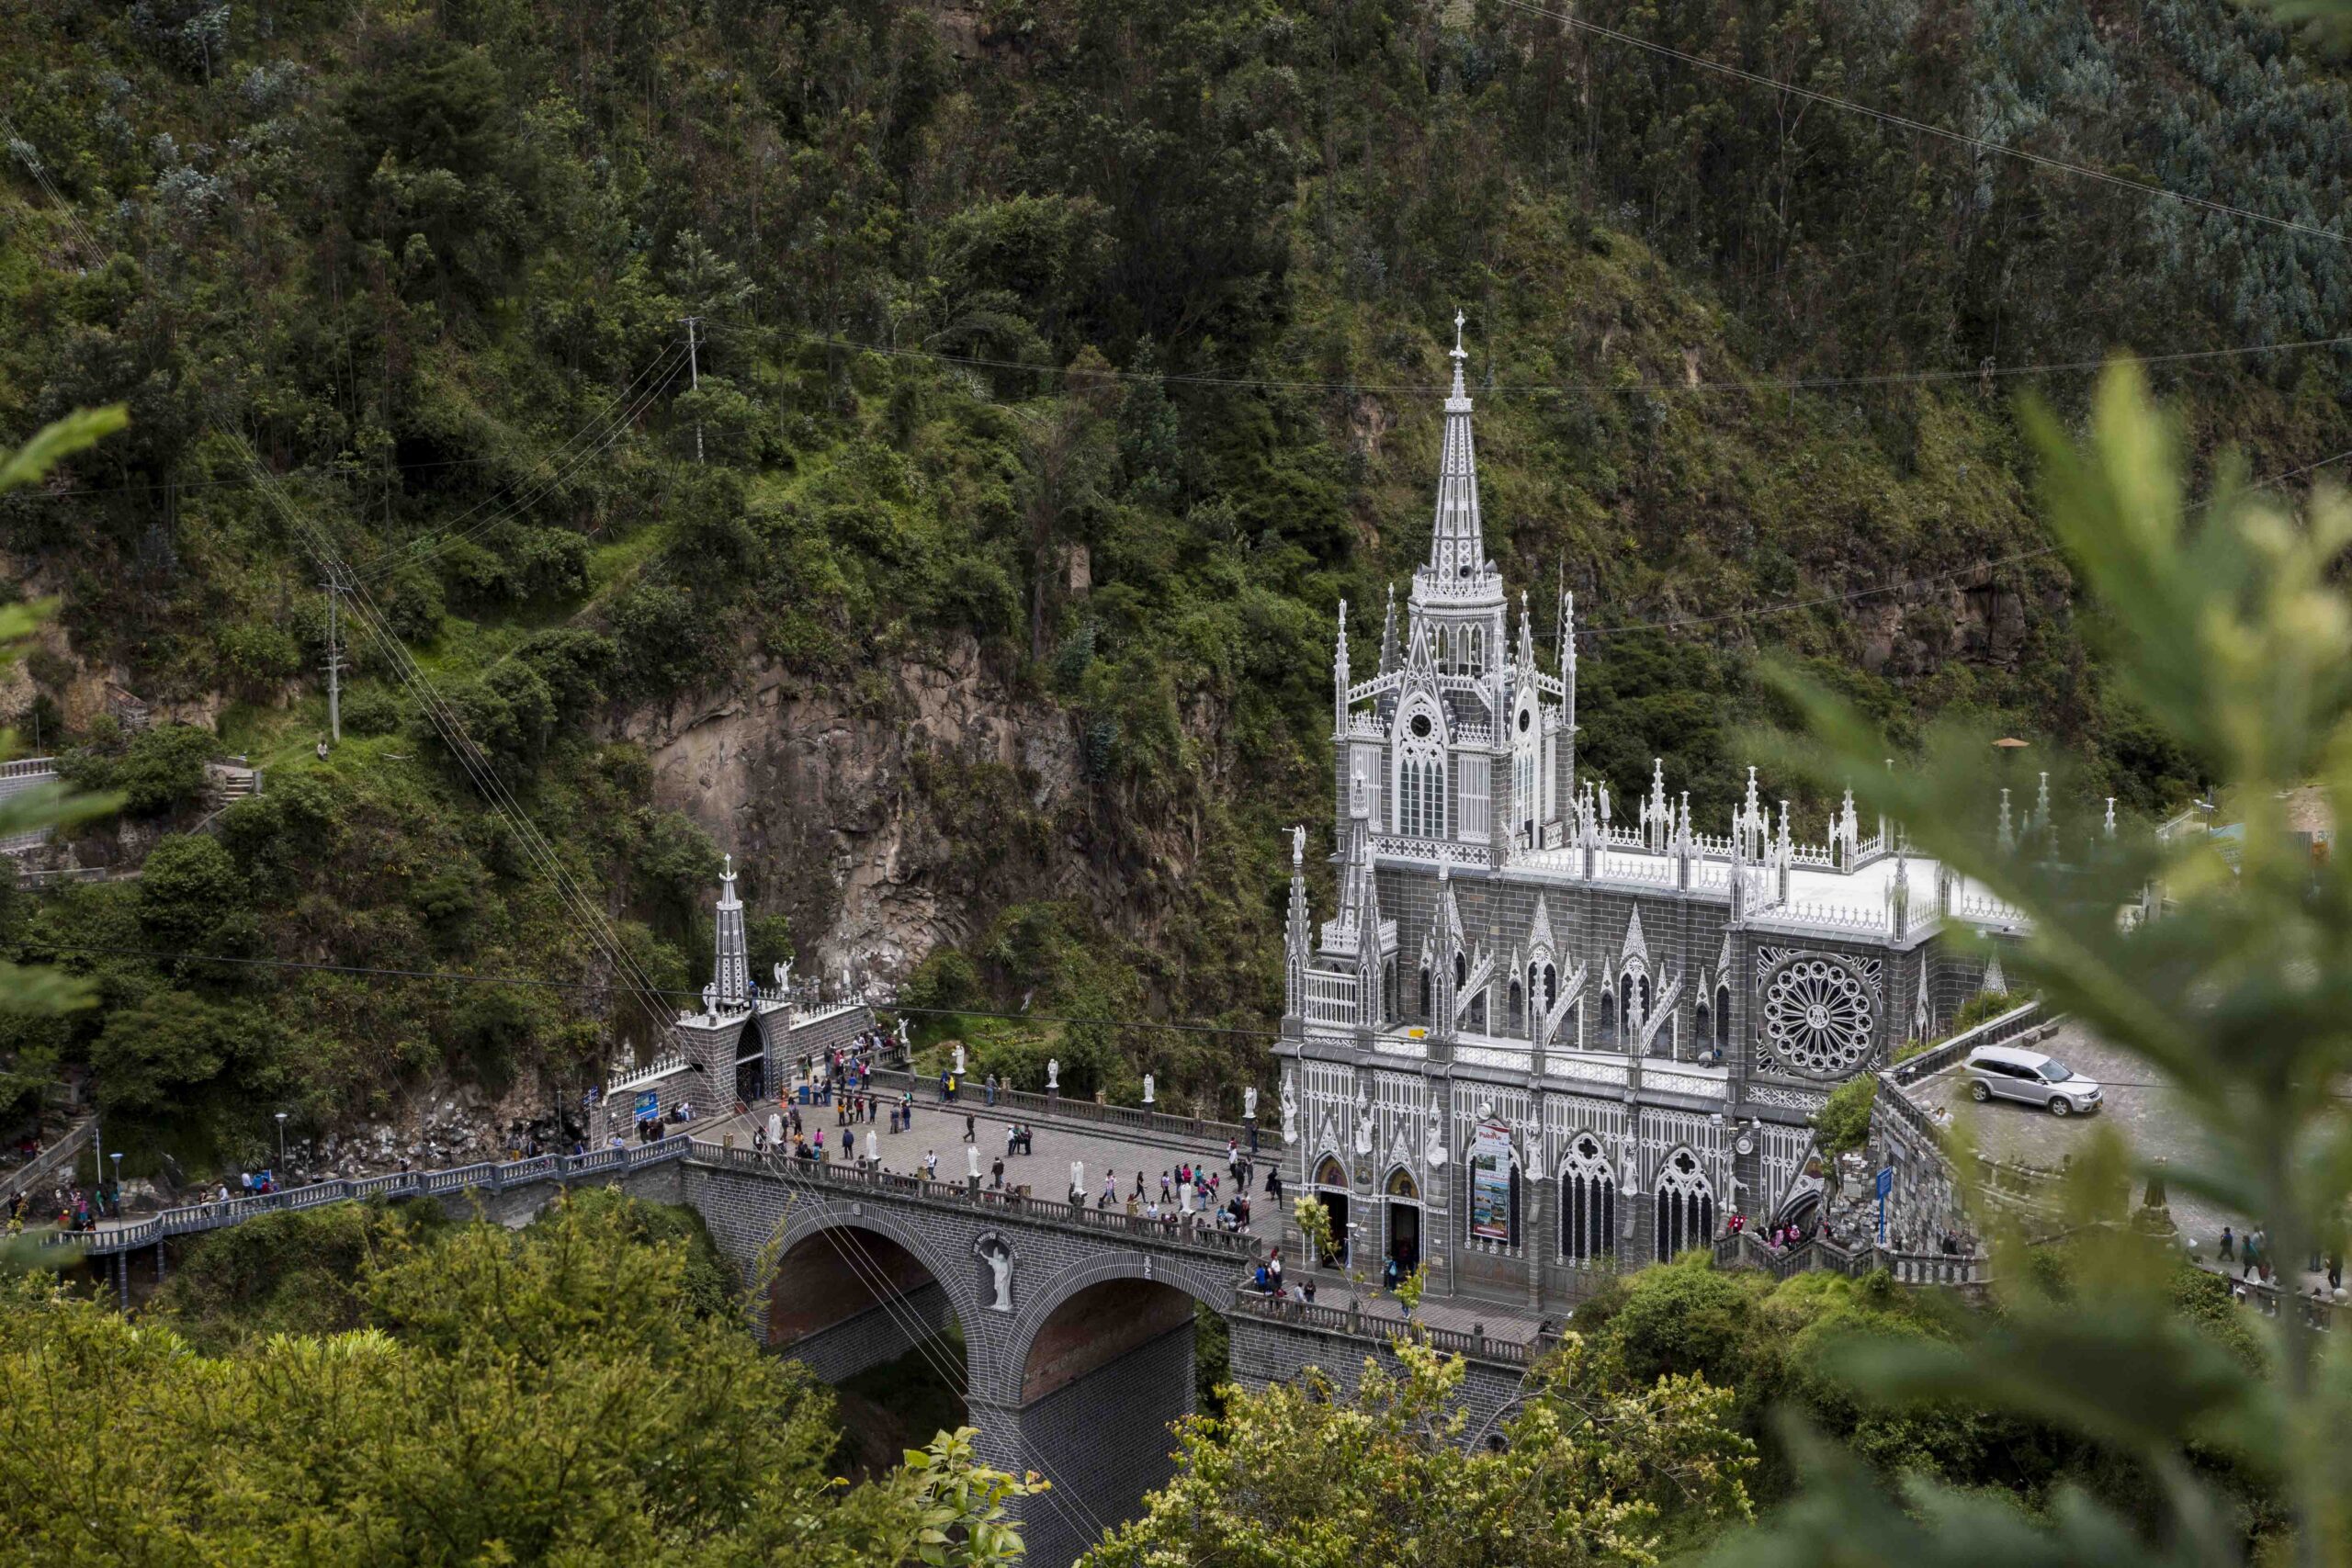 Santuario de las Lajas, colombia, nomadarte, vanlife